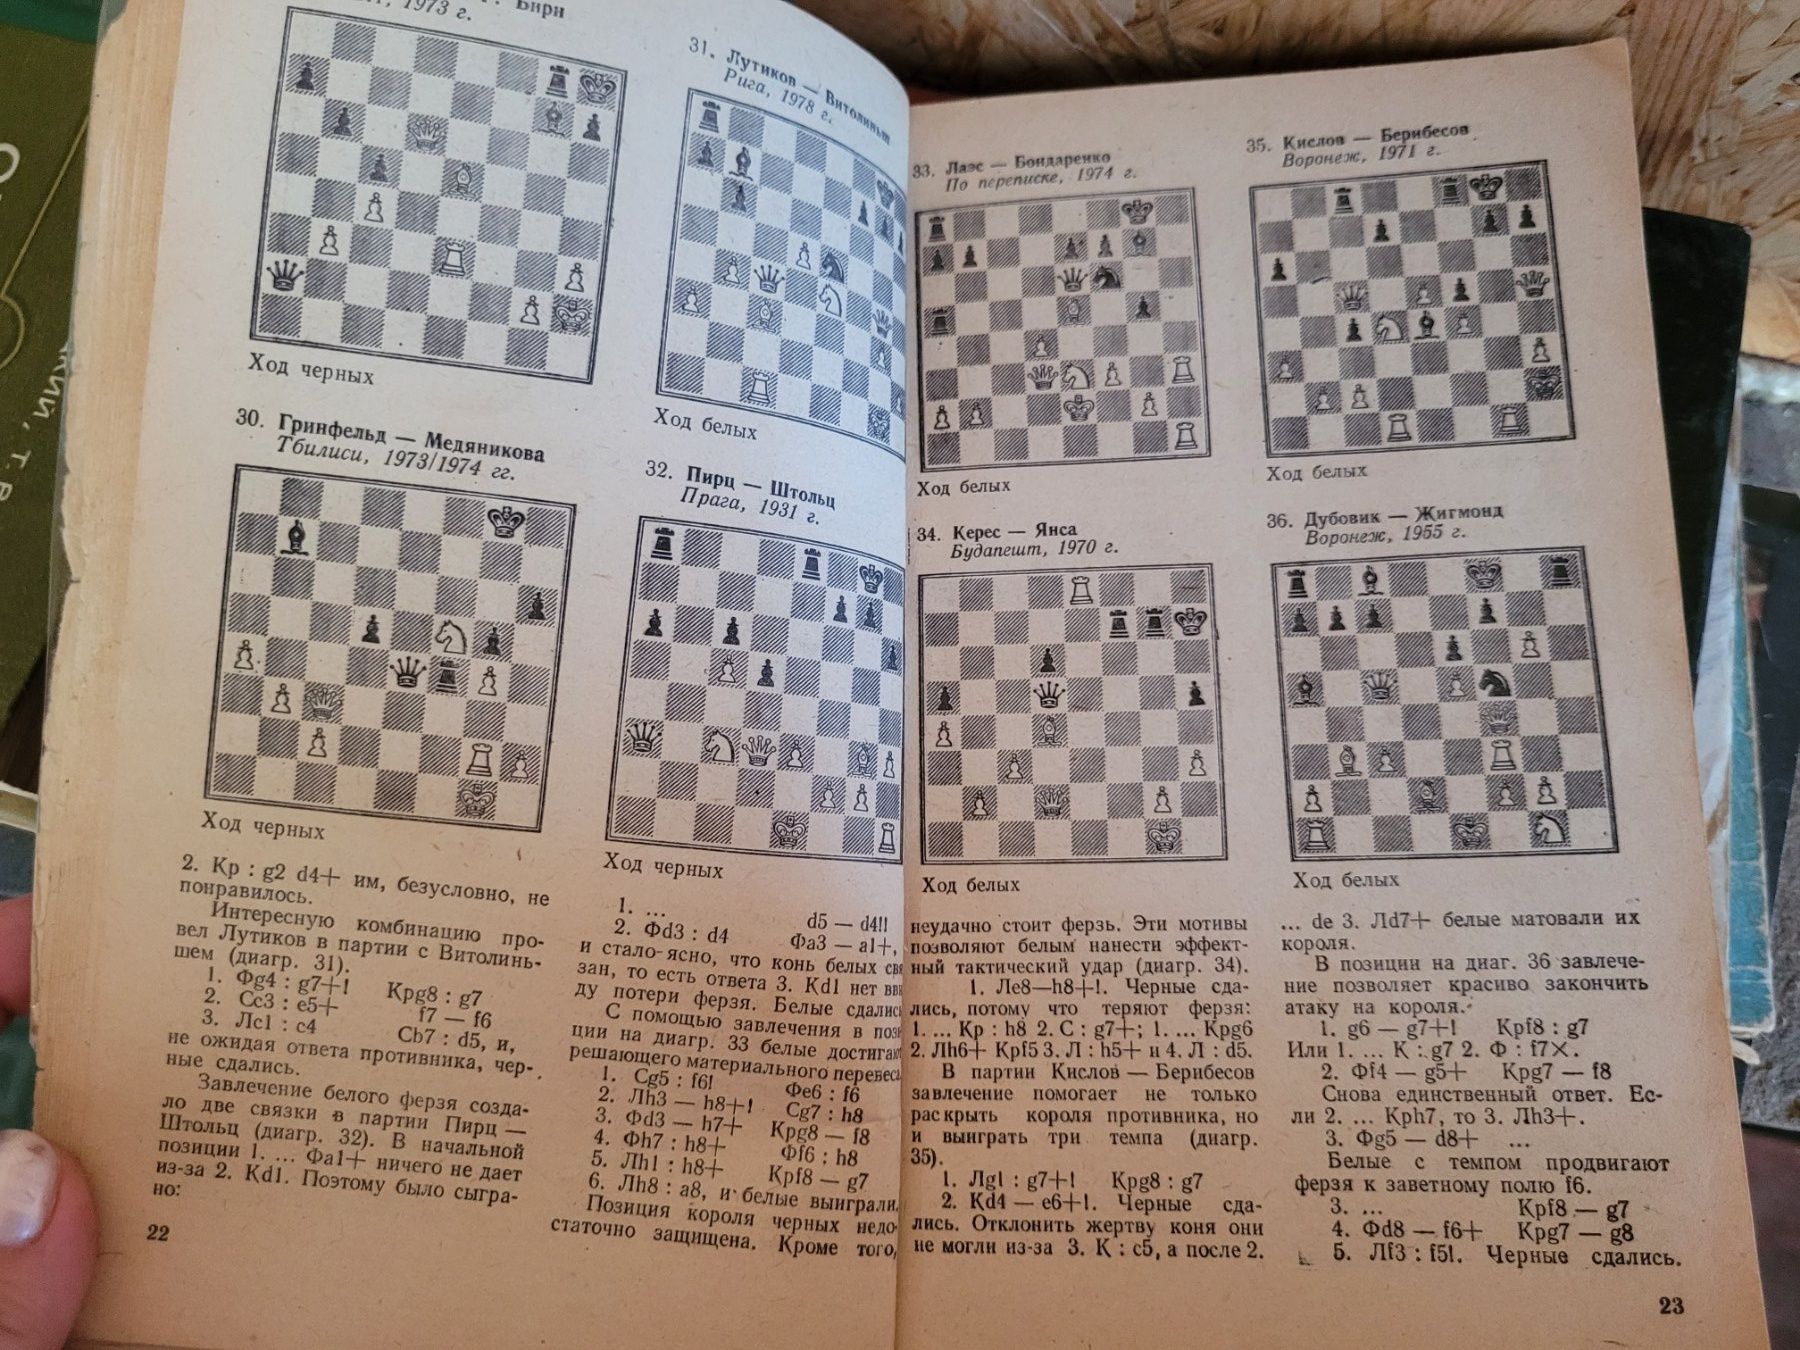 А.С.Волчок. Тактика и стратегия шахмат